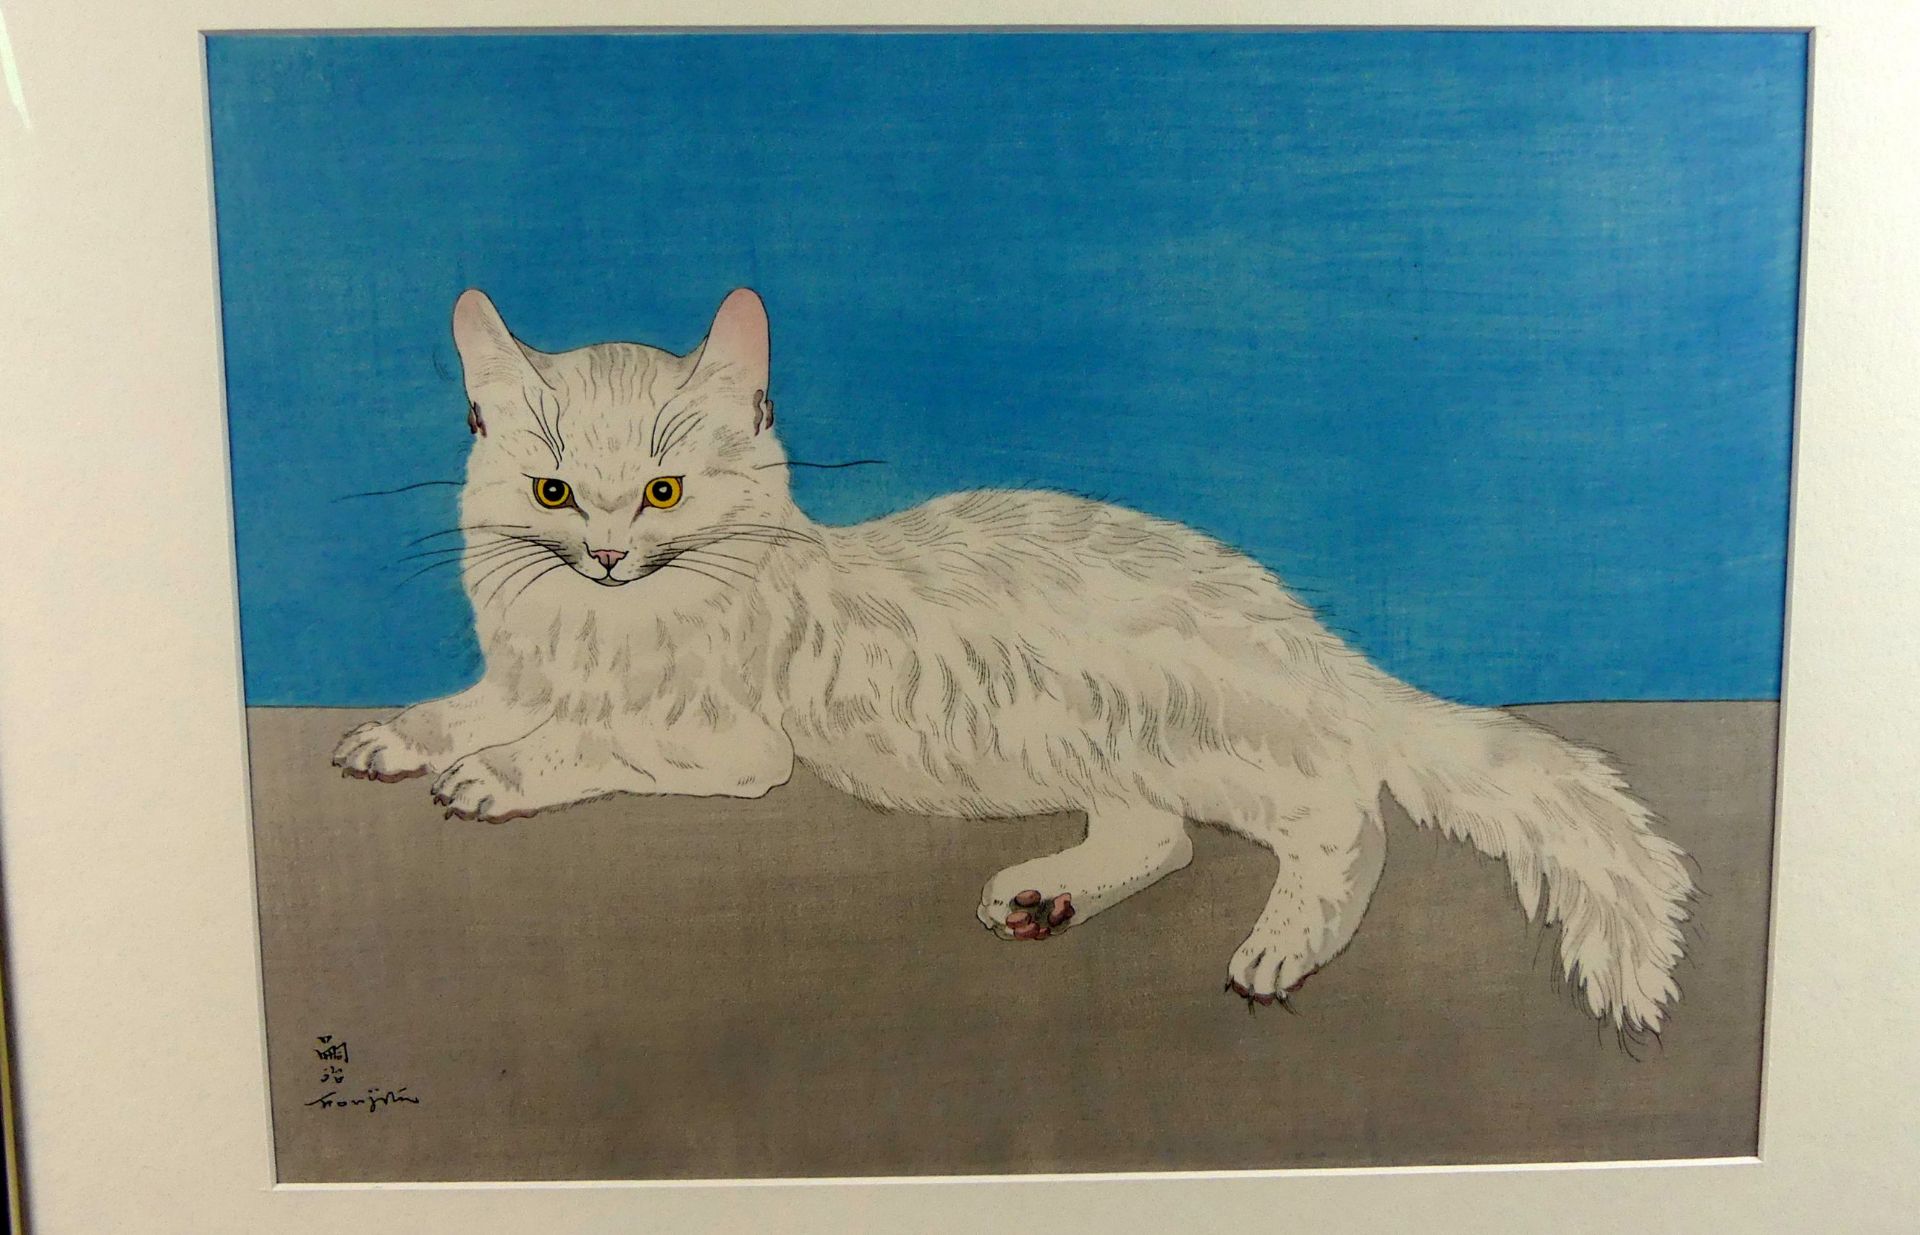 LÈONARD TSUGUHARU FOUJITA (1886-1968), "Katze", - Image 2 of 4